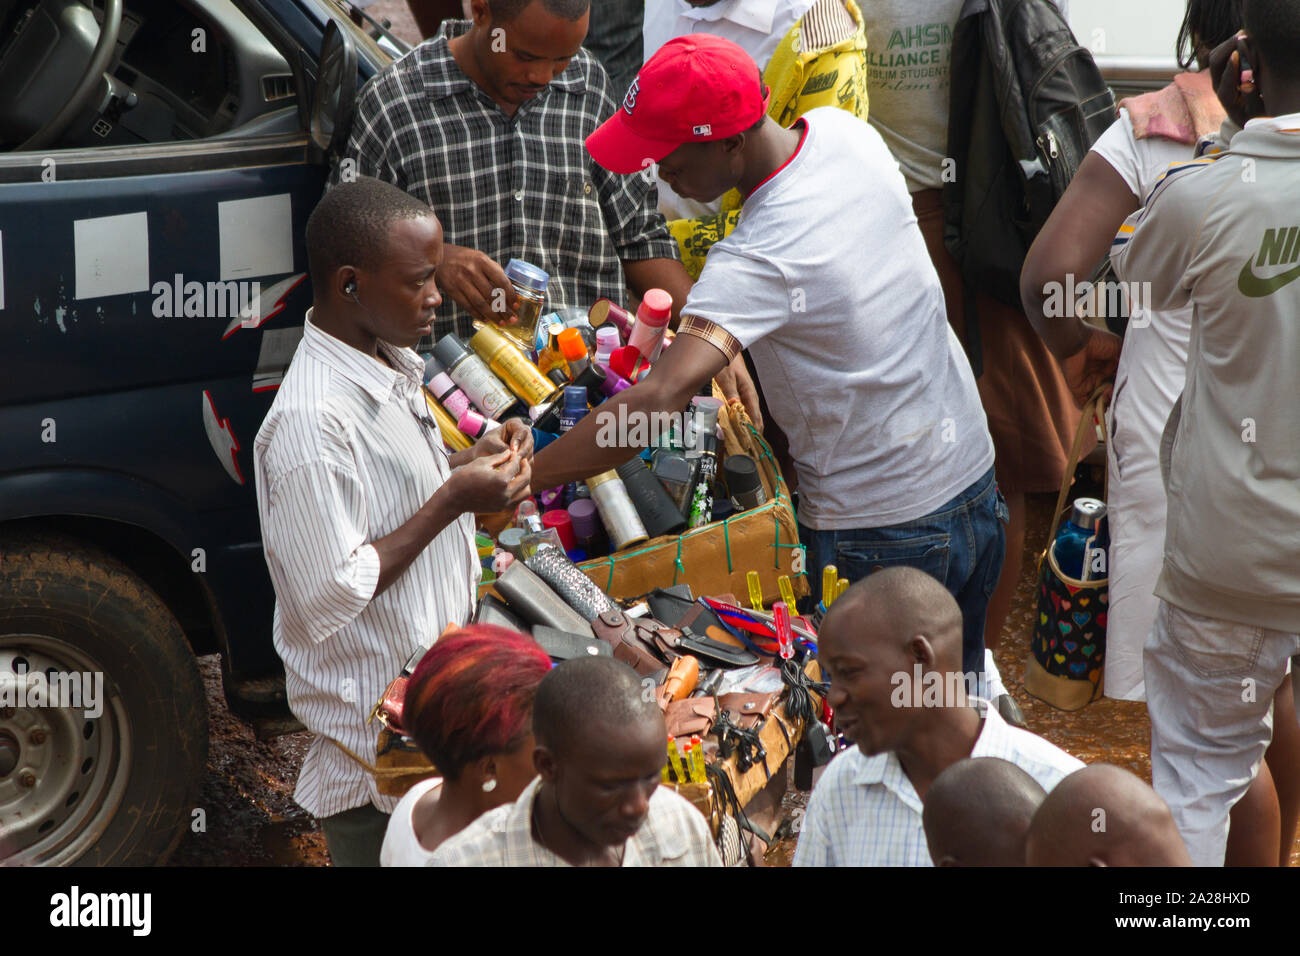 KAMPALA, UGANDA - OCTOBER 03, 2012.  A man sells wallets to passengers at the taxi park in Kampala, Uganda on October 03,2012. Stock Photo